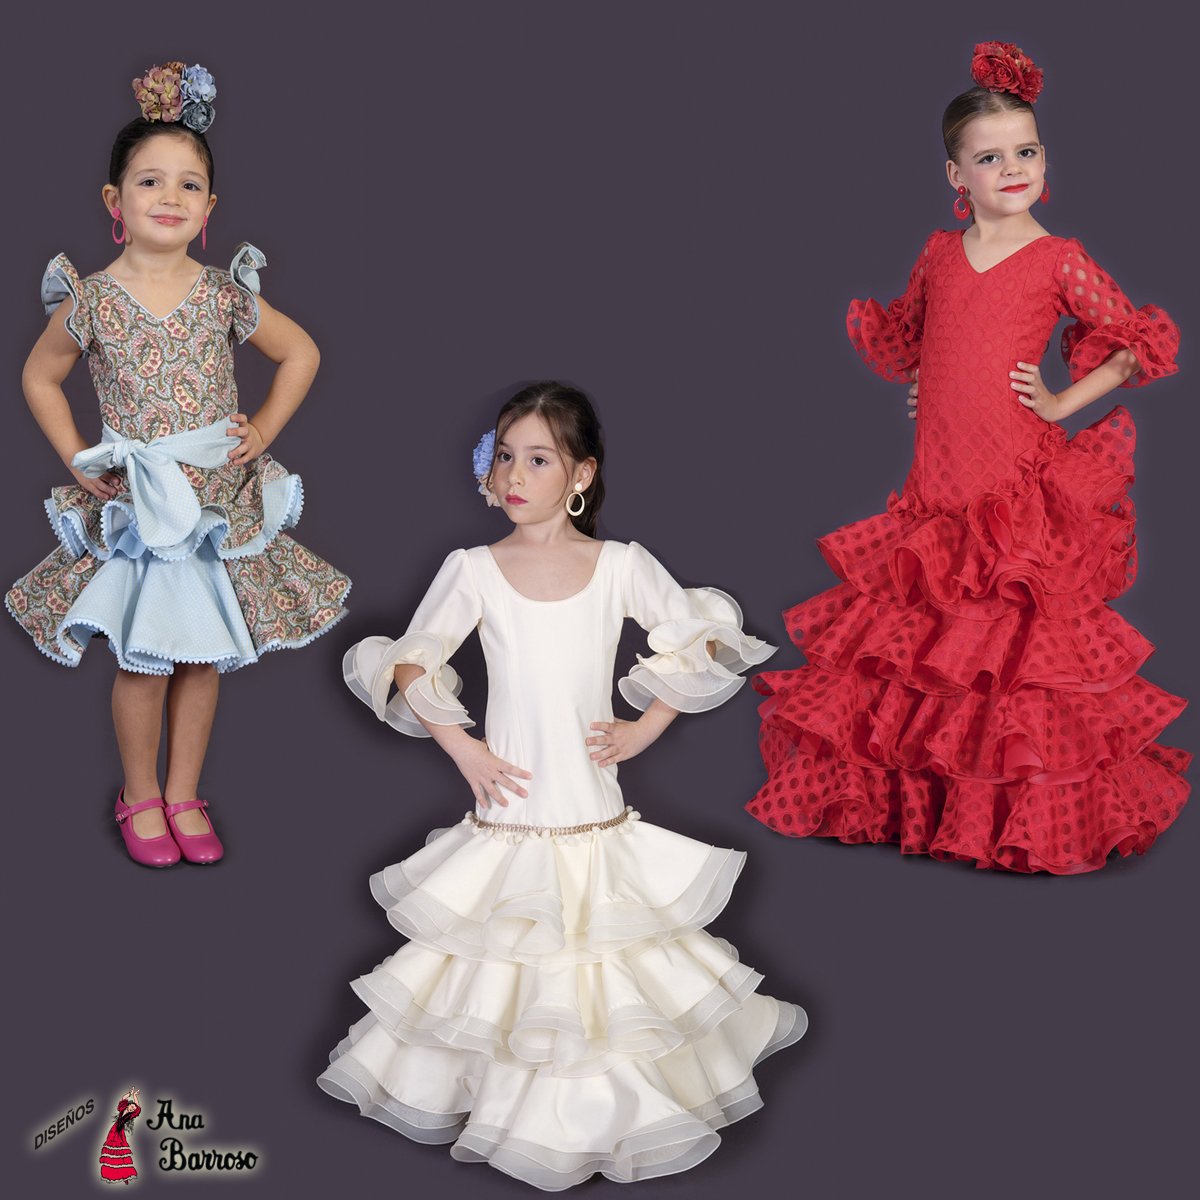 Diseños Ana Barroso on Twitter: "Ayer fue el día internacional de infancia y aprovechamos para que cada una de nuestras colecciones anuales incluye varios modelos de trajes de flamenca para